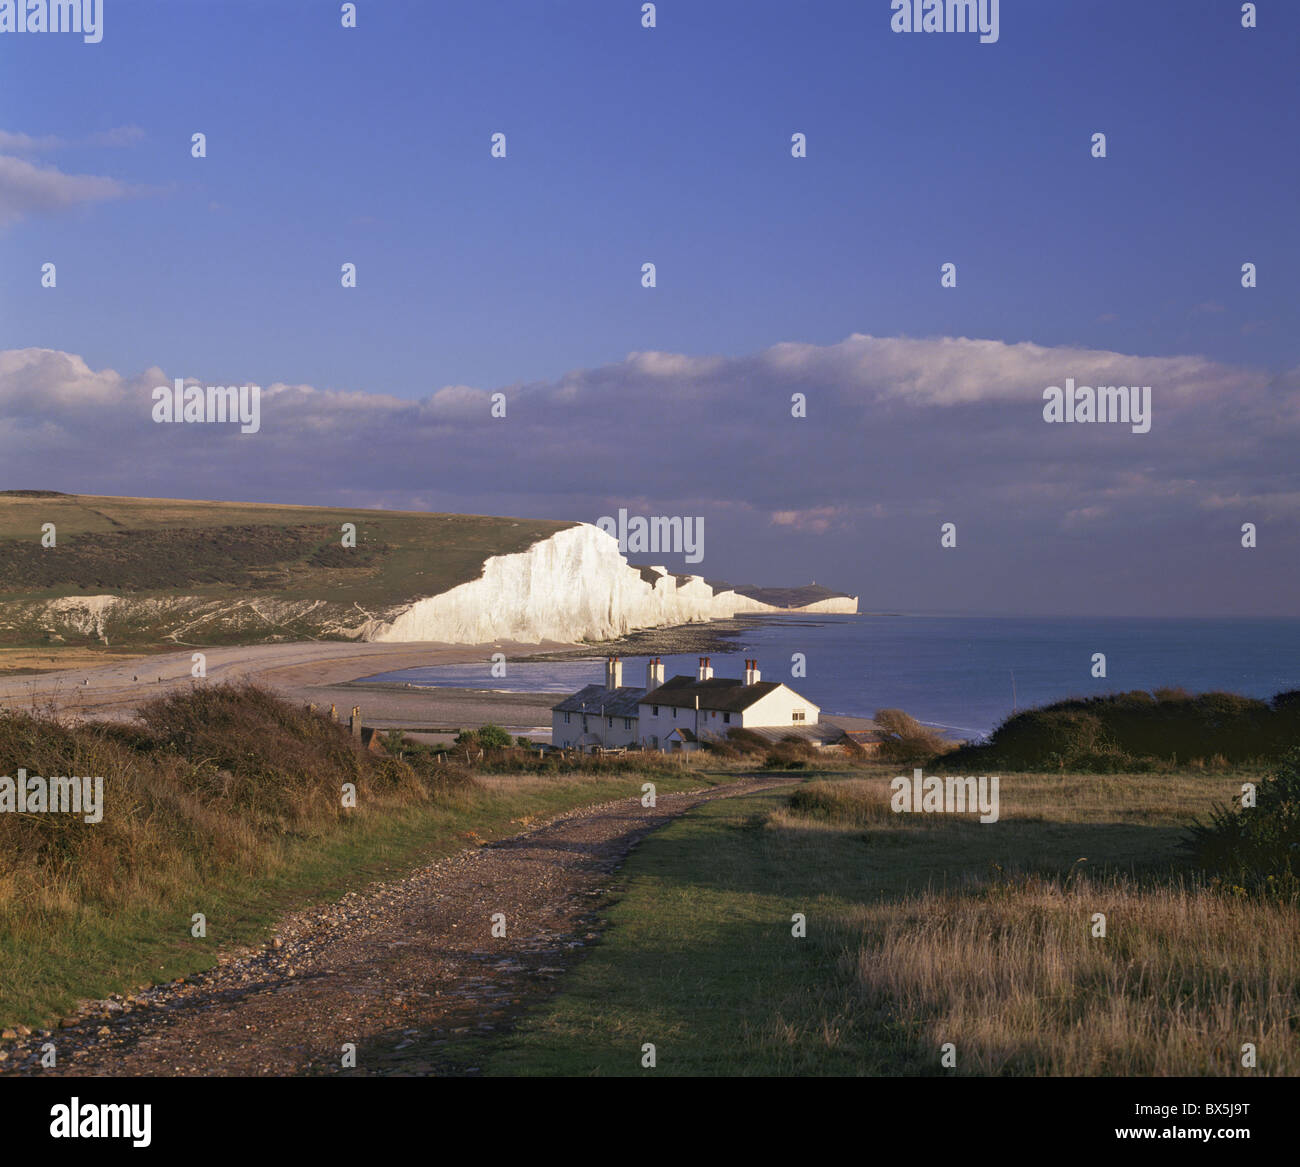 Weißen Kreidefelsen der sieben Schwestern im Cuckmere Haven, in der Nähe von Seaford, East Sussex, England, Vereinigtes Königreich, Europa aus gesehen Stockfoto